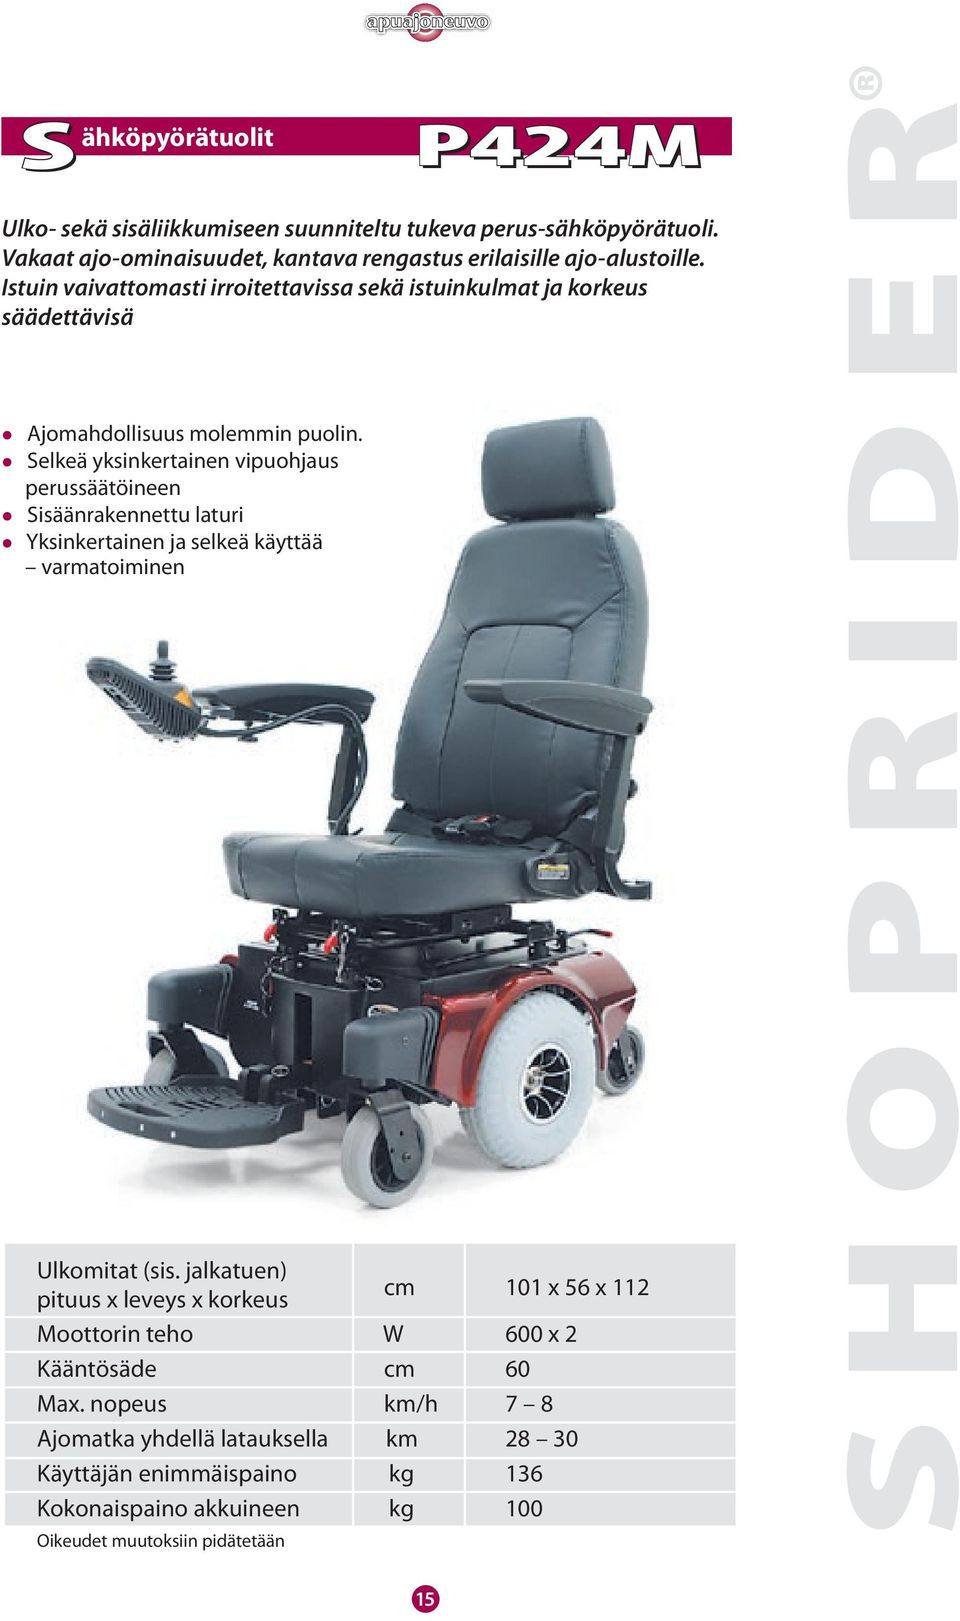 suunniteltu tukeva perus-sähköpyörätuoli. Vakaat ajo-ominaisuudet, kantava rengastus erilaisille ajo-alustoille.